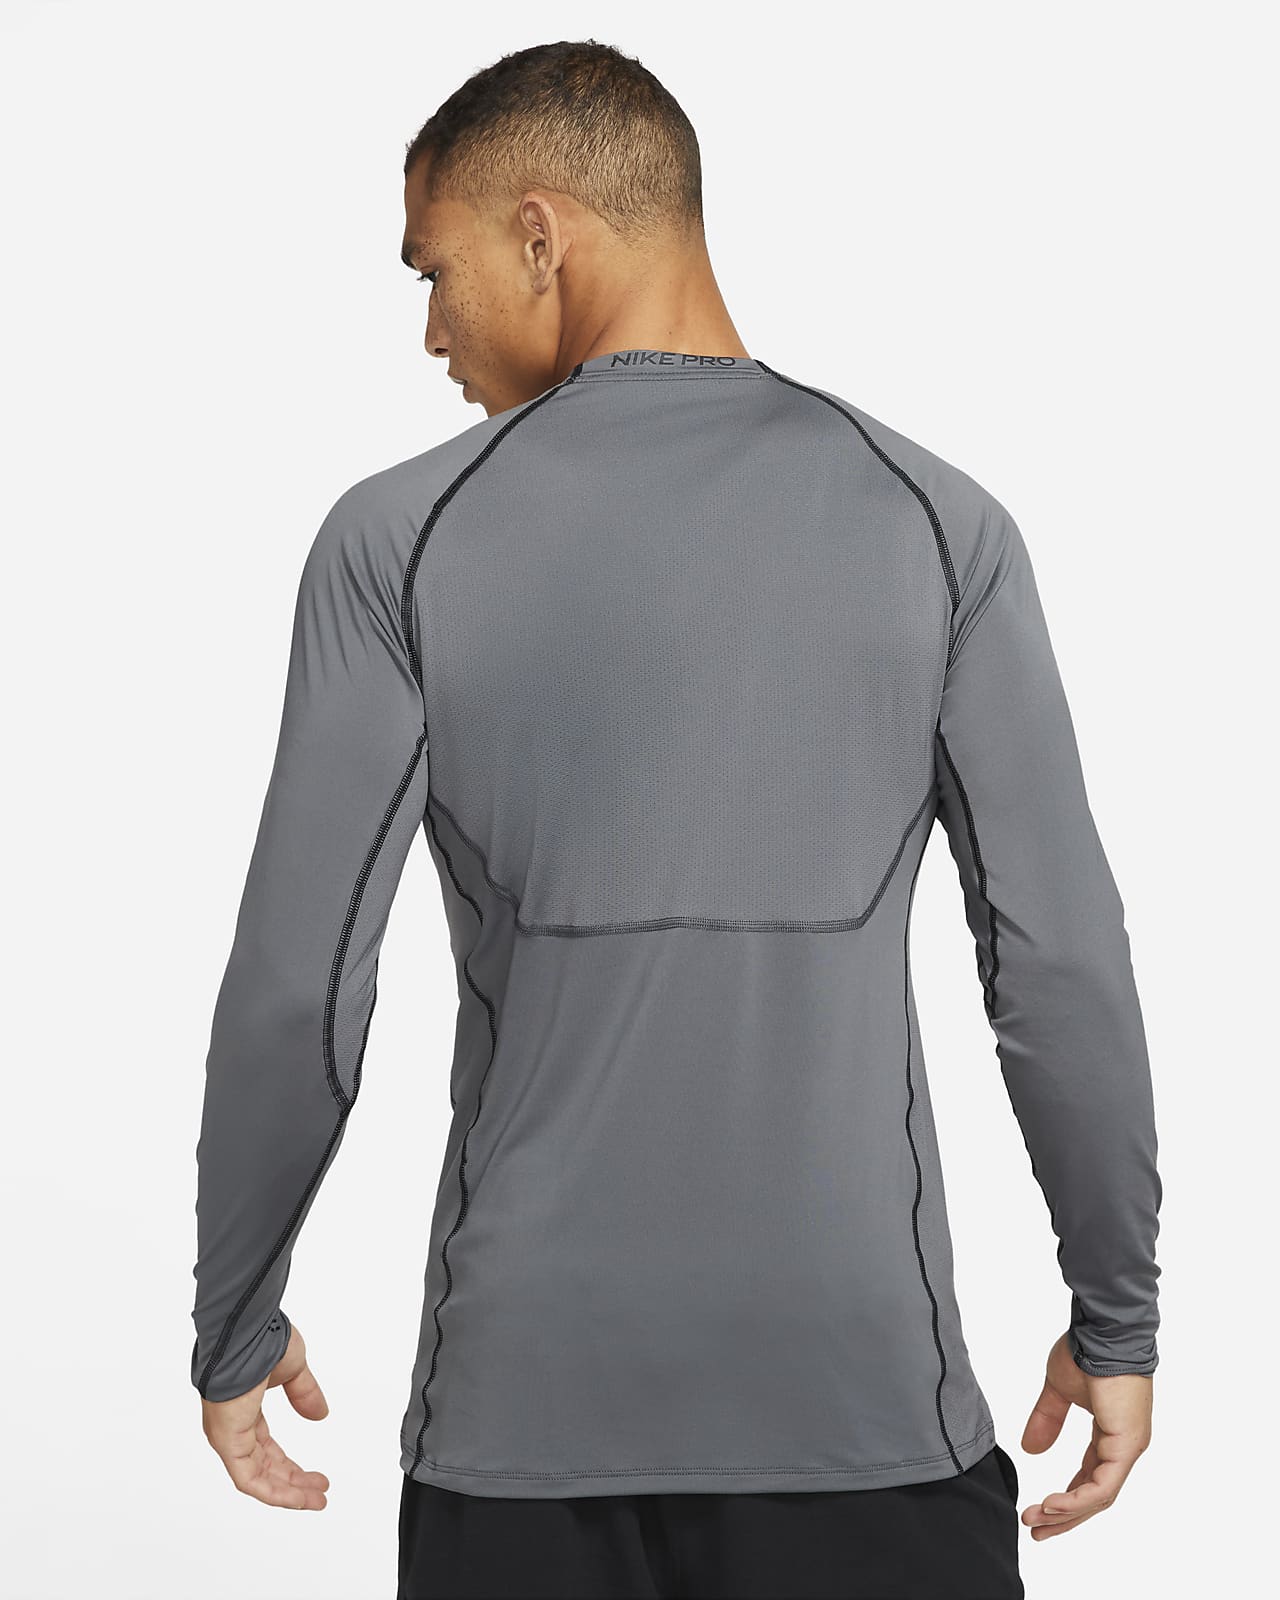 Array functie Prestatie Nike Pro Dri-FIT Men's Slim Fit Long-Sleeve Top. Nike.com